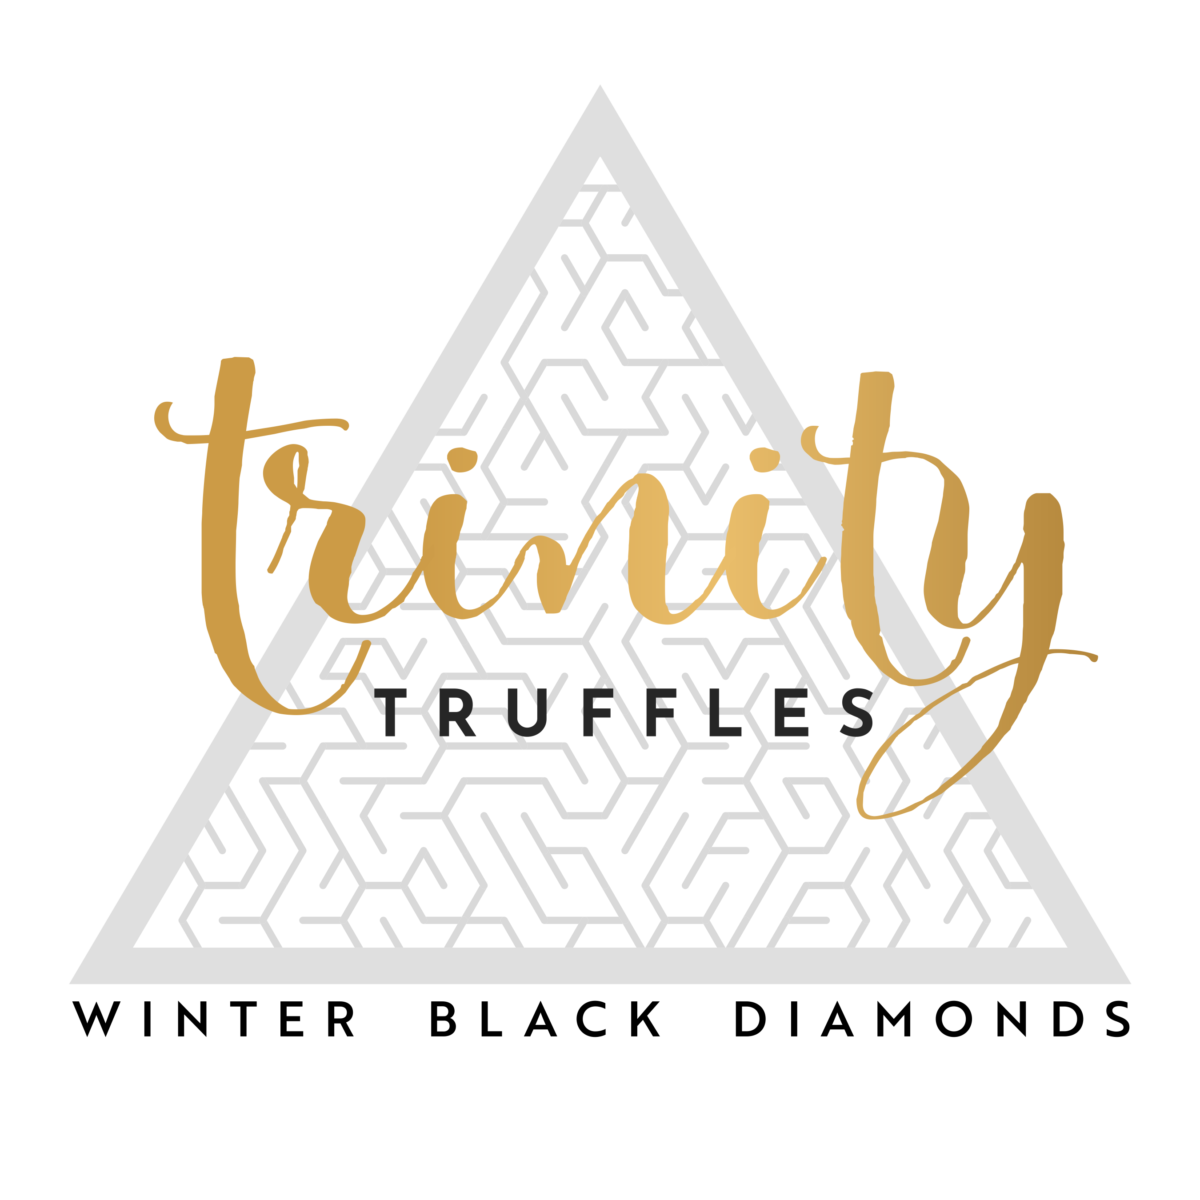 trinity truffles - 2500 pxl